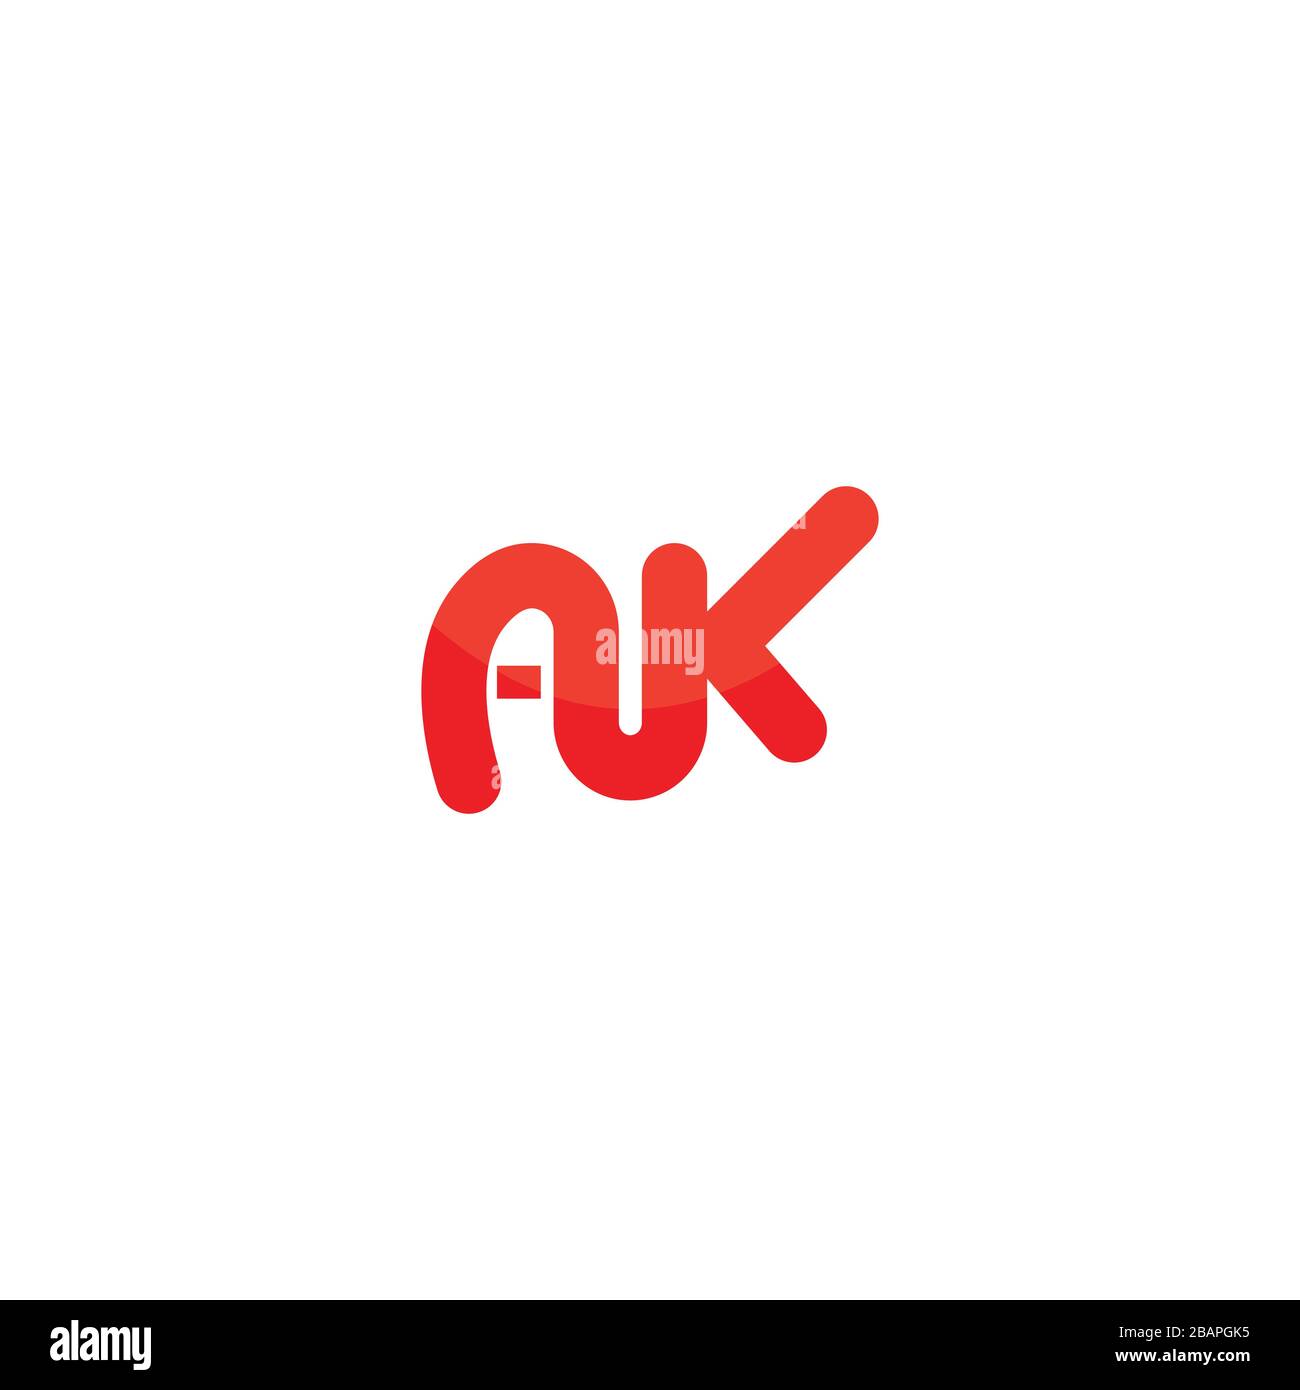 Initial Letter ak logo or ka logo vector design template Stock Vector